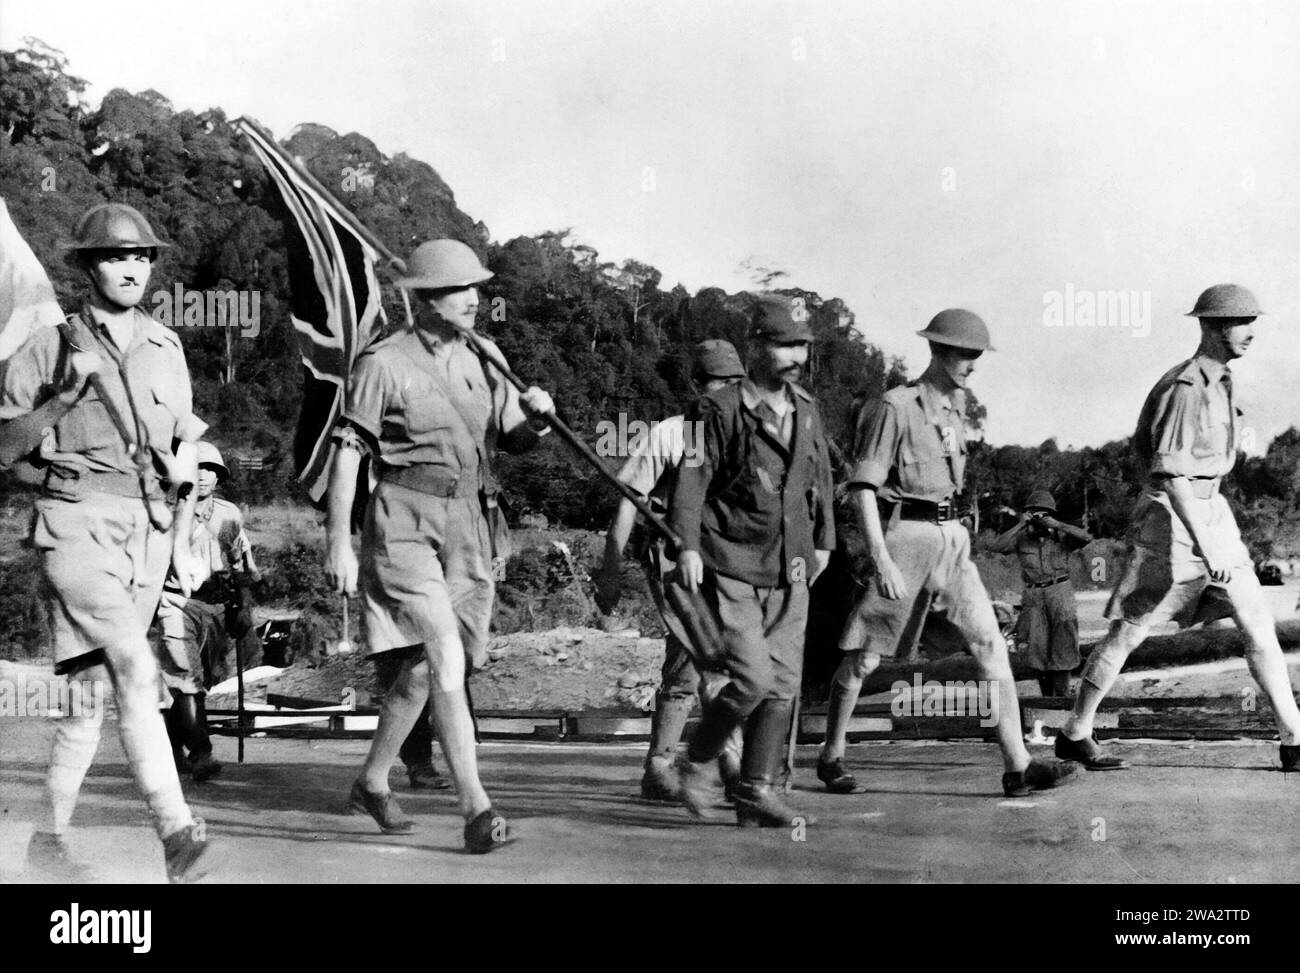 Der Fall von Singapur. Generalleutnant Arthur Percival (rechts), angeführt von Ichiji Sugita, läuft unter einer Waffenstillstandsflagge, um die Kapitulation der Commonwealth-Truppen in Singapur am 15. Februar 1942 auszuhandeln Stockfoto